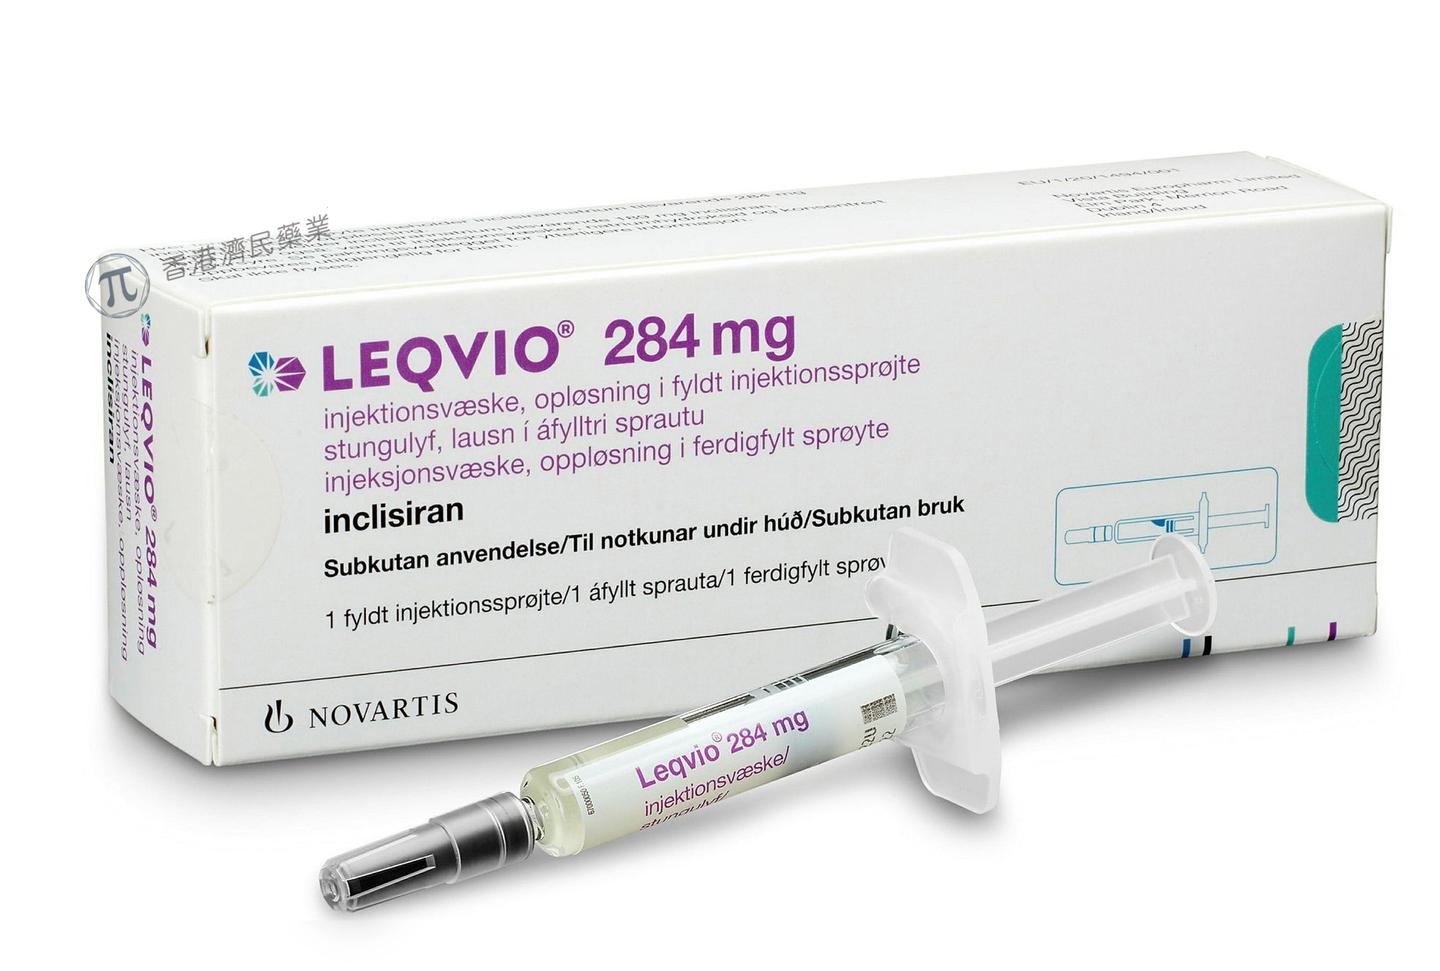 降LDL-C！Leqvio(inclisiran)适应症更新，纳入对原发性高脂血症的治疗_香港济民药业